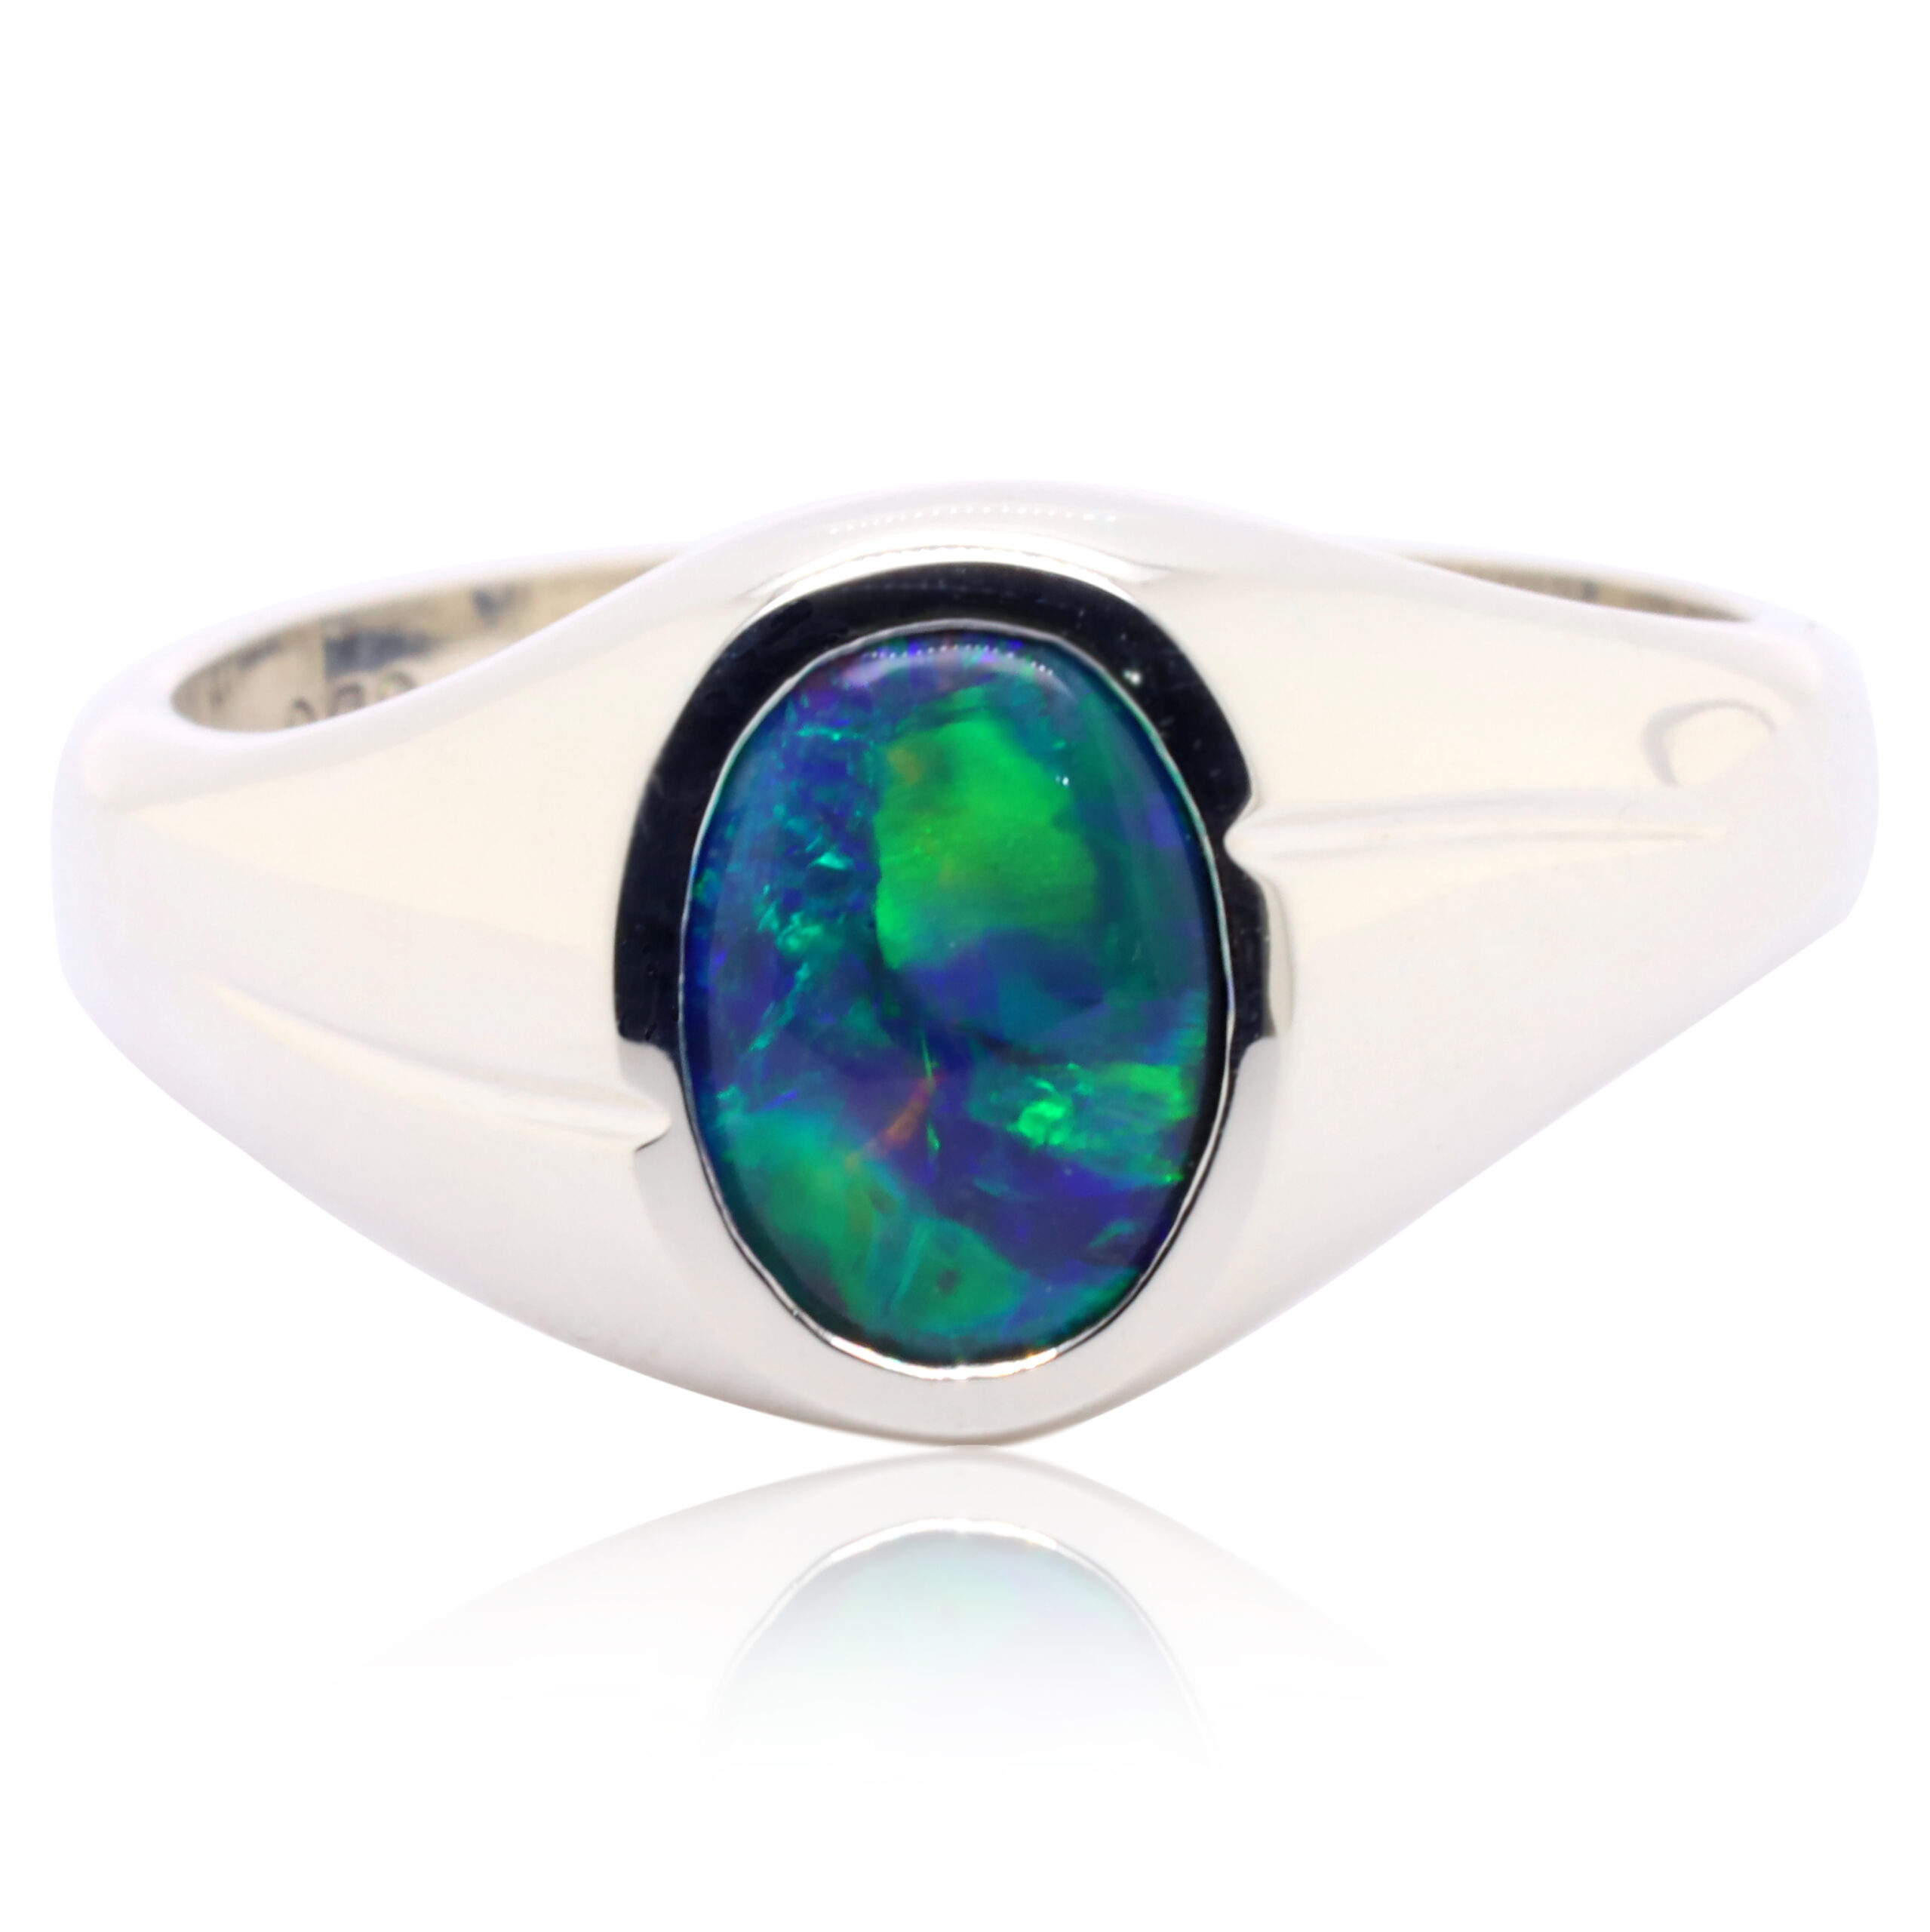 Royal flat white opal ring - Monte Cristo